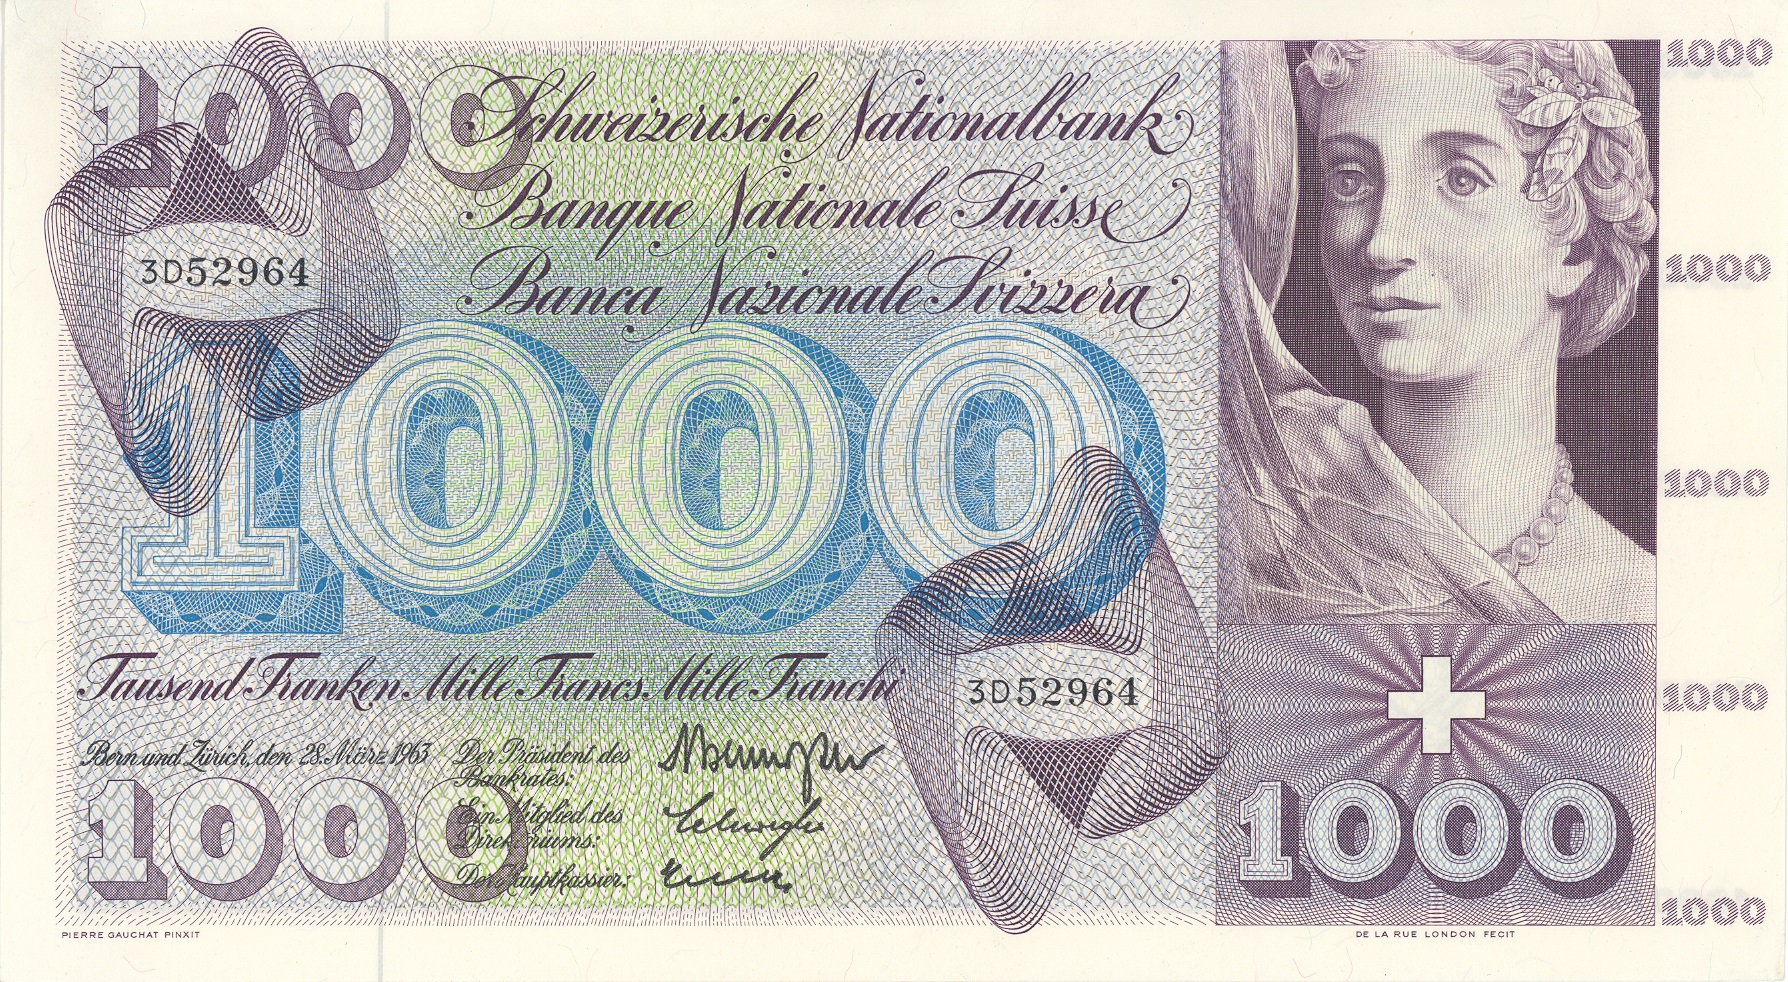 ✅ 10 pezzi mille franchi revisori ✅ denaro prüfstift penna banconota esaminatori test euro ✅ 